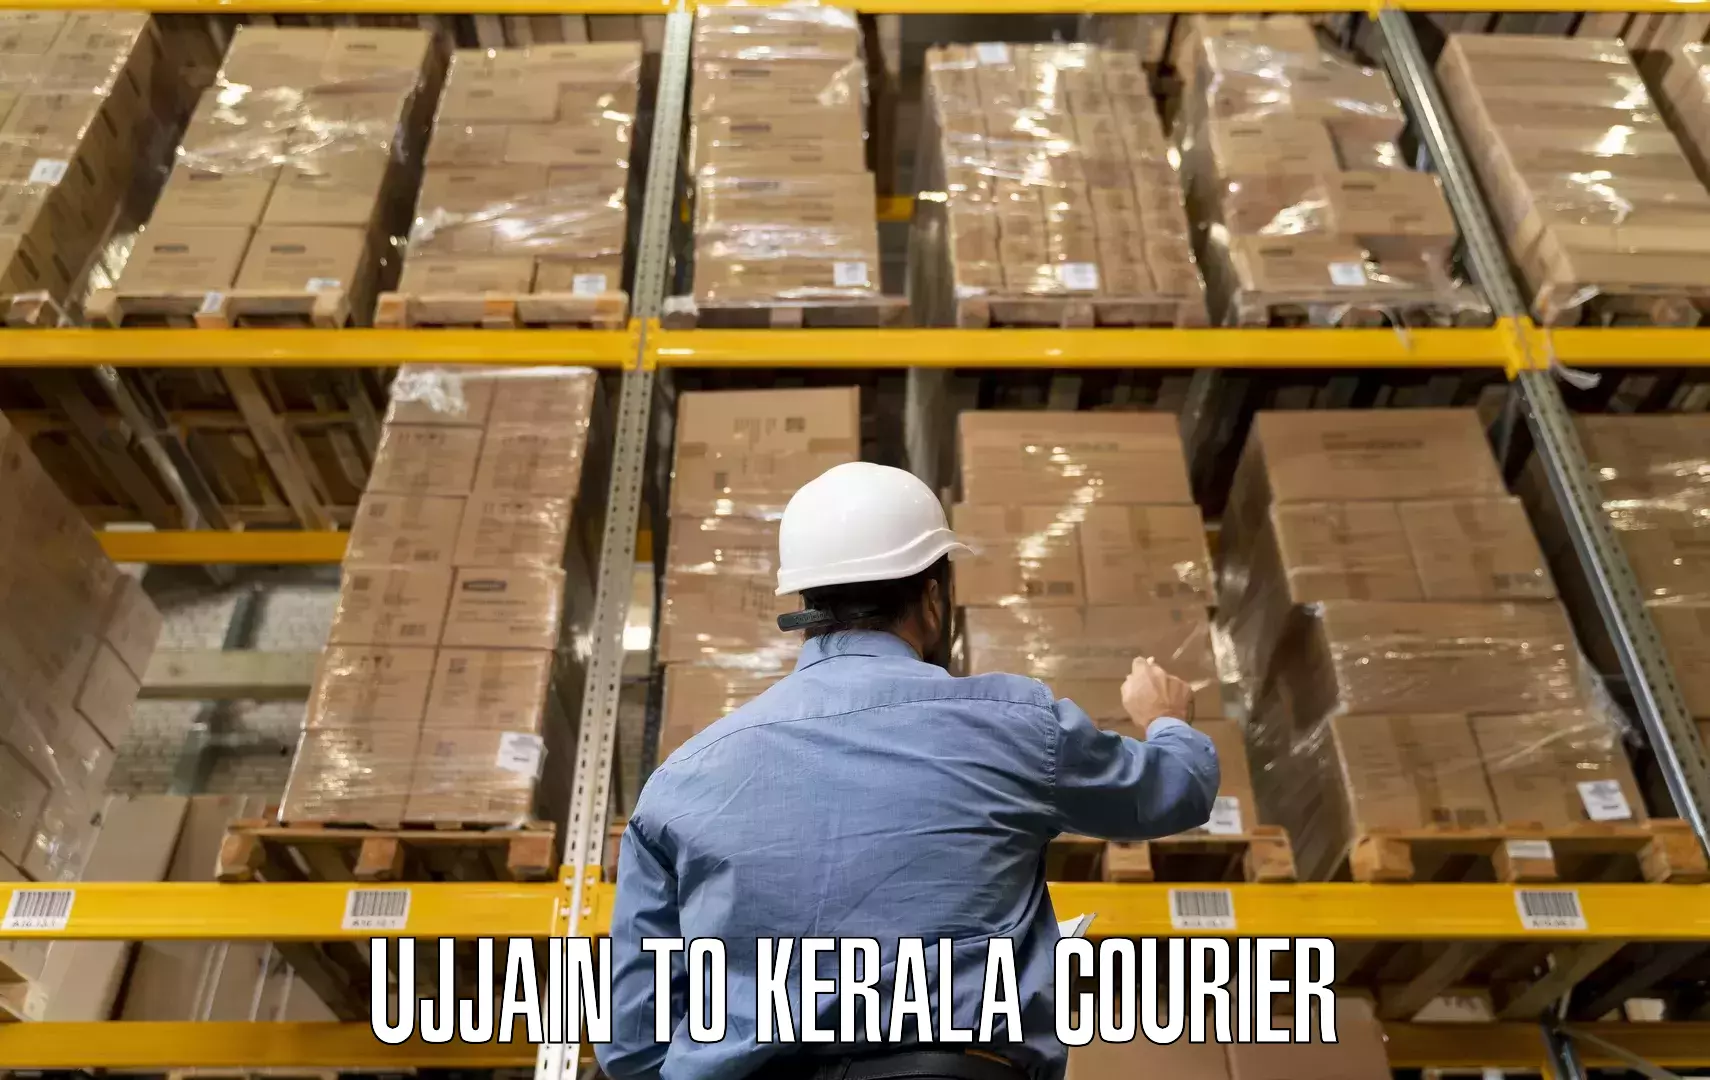 Expert moving and storage Ujjain to Kumily